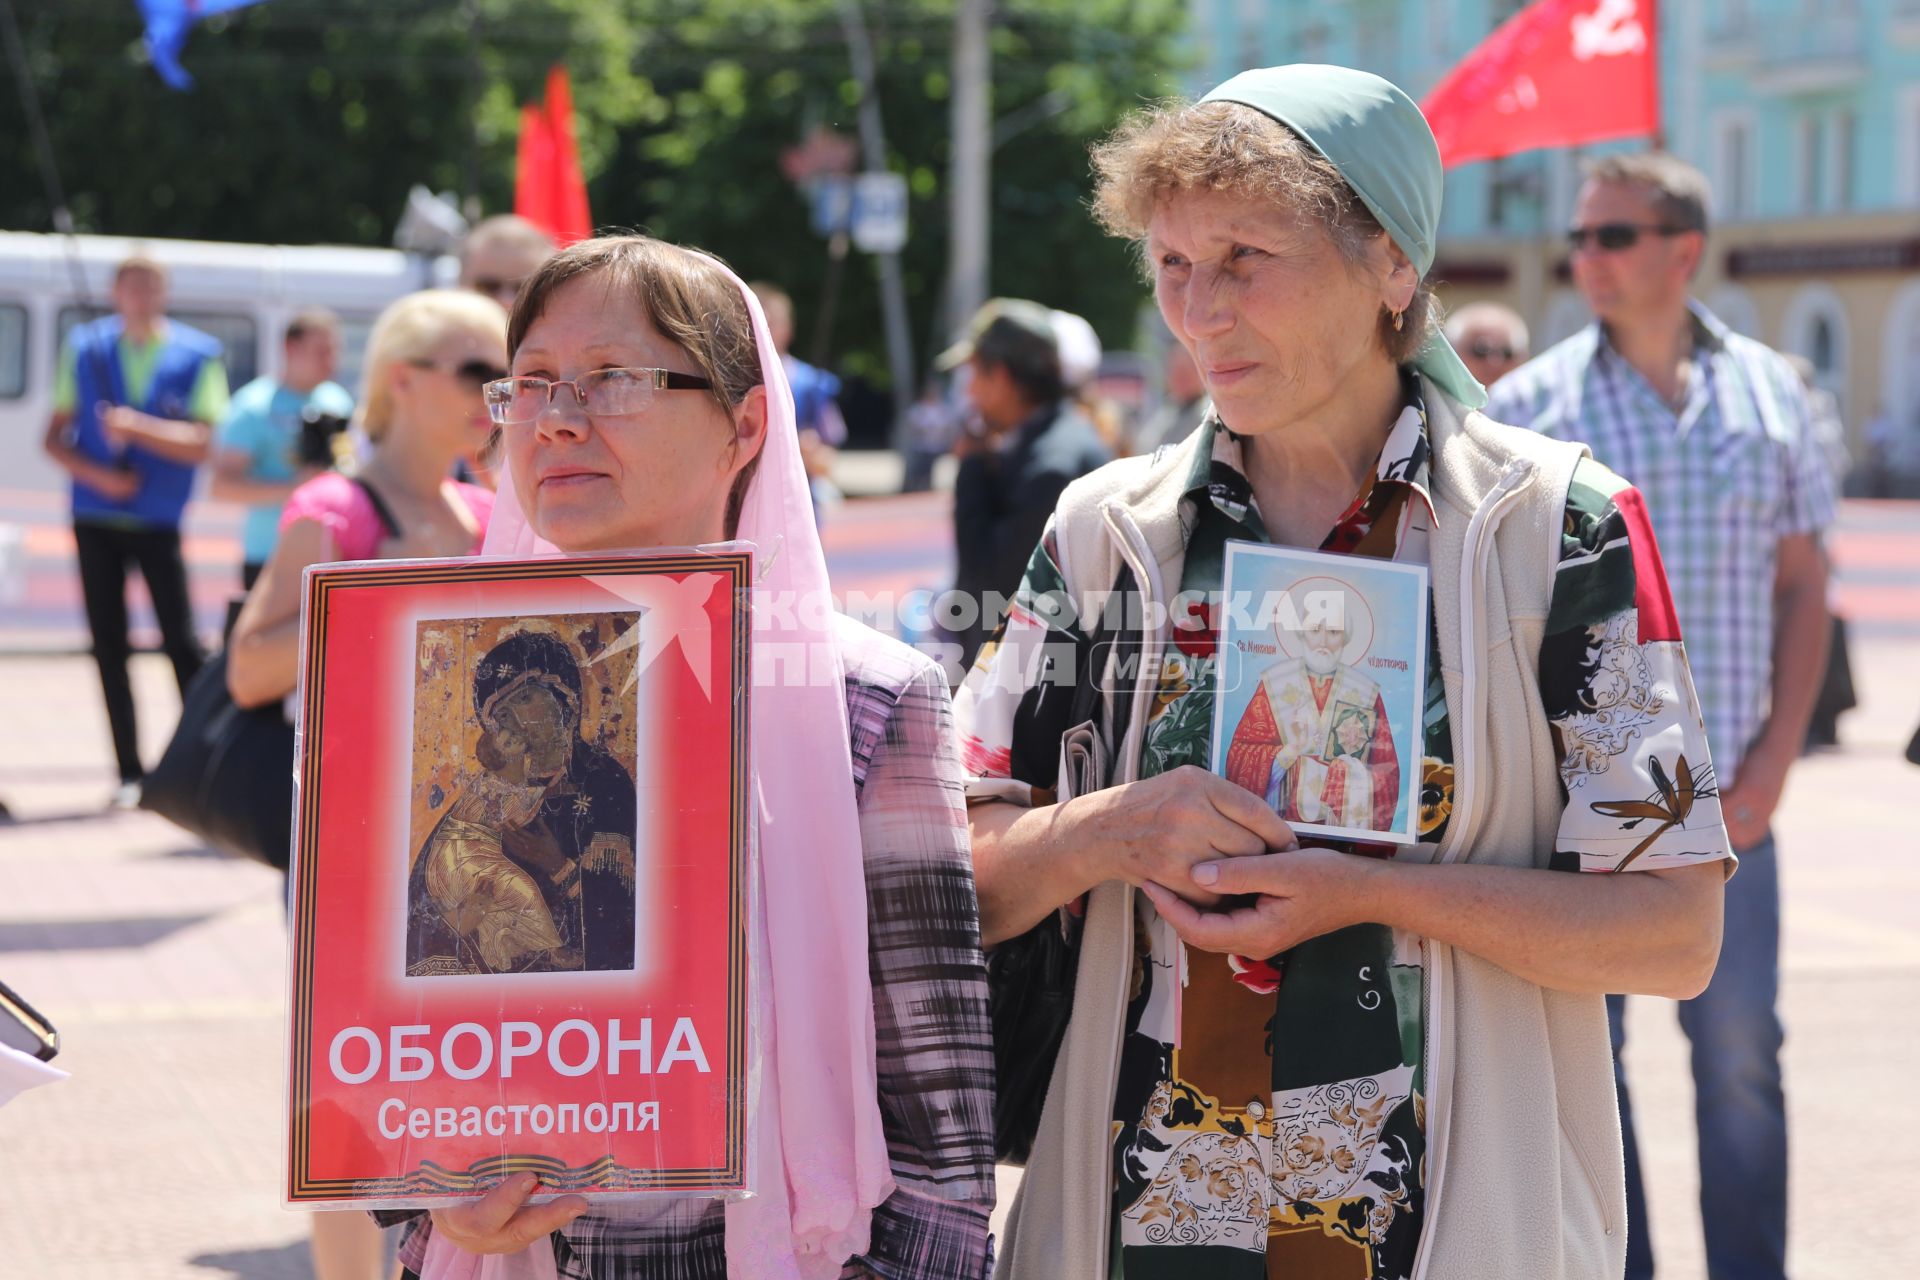 Луганск. День молодежи. На снимке: участницы антивоенного марша держат иконы.